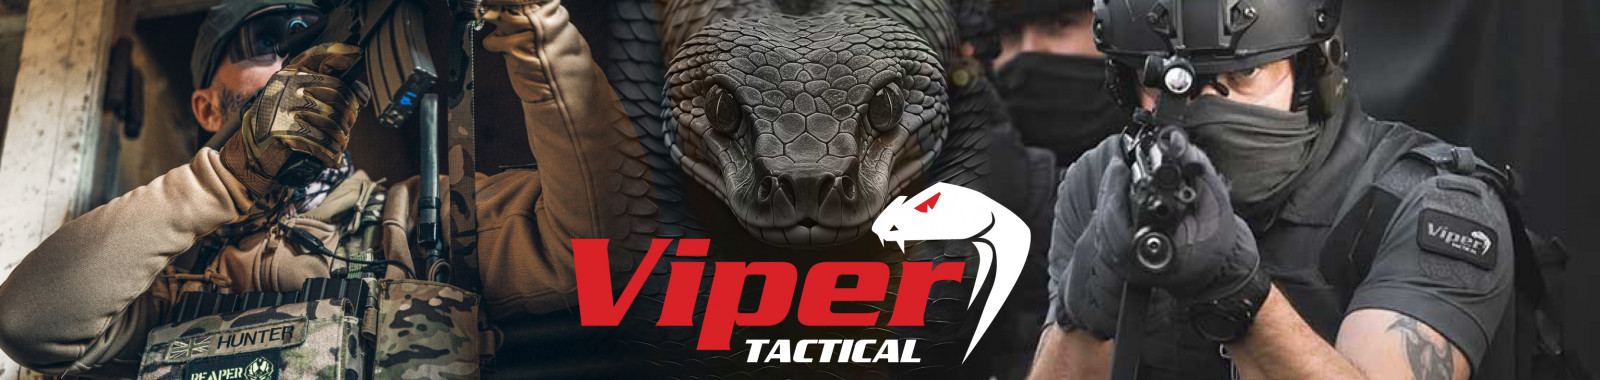 Viper Tactical !